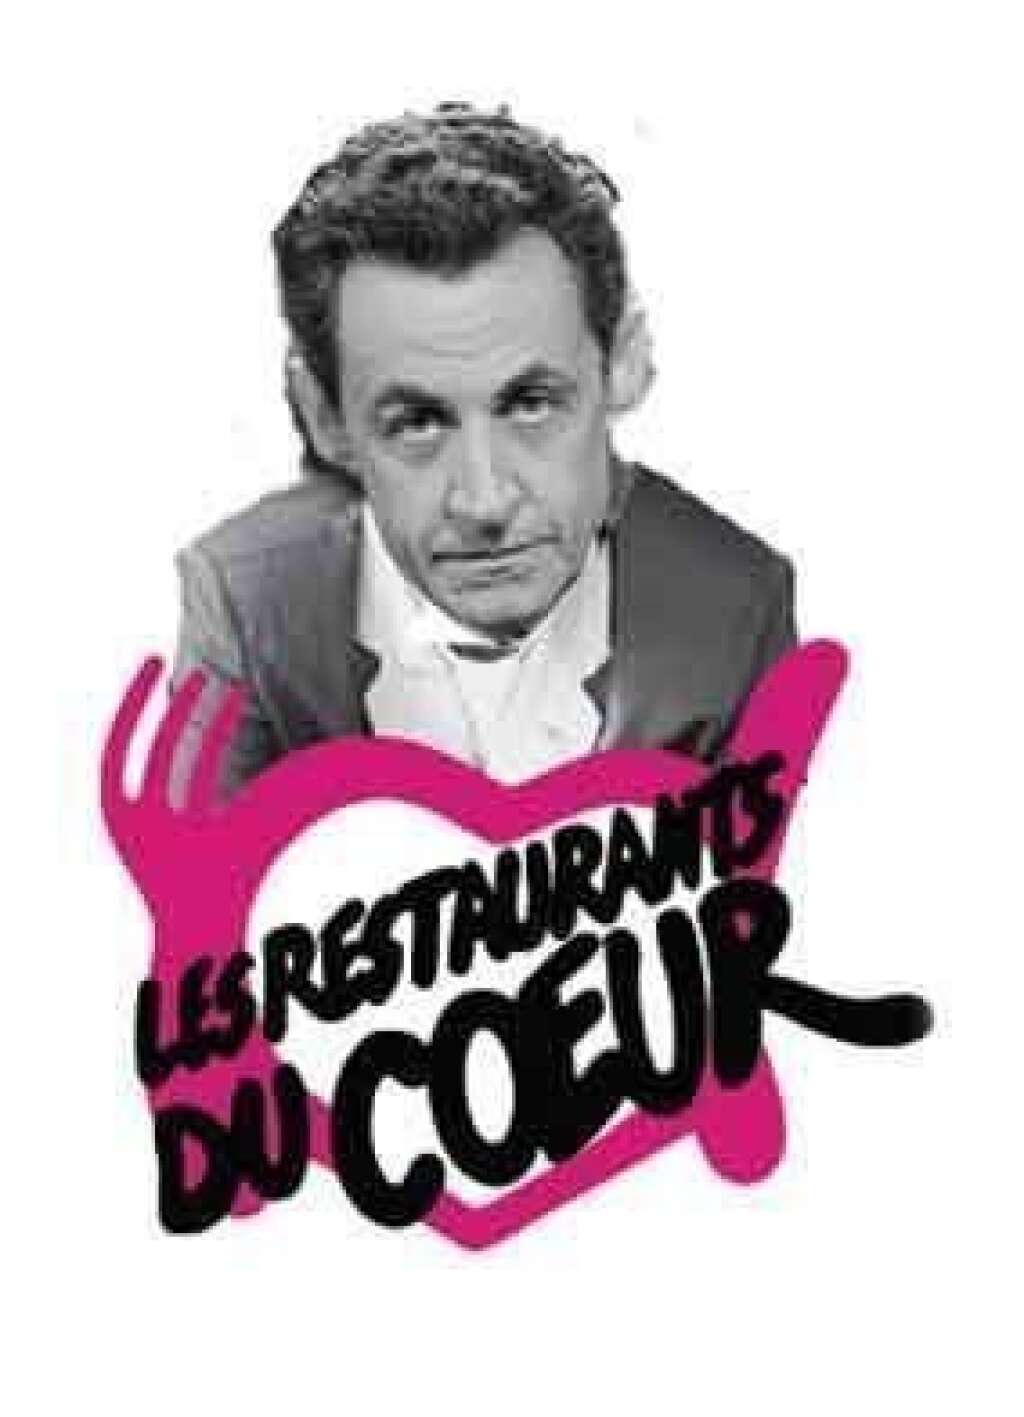 - <blockquote class="twitter-tweet"><p>Une souscription nationale lancée par l&#39;<a href="https://twitter.com/search?q=%23UMP&src=hash">#UMP</a> pour <a href="https://twitter.com/search?q=%23Sarkozy&src=hash">#Sarkozy</a> : vous avez dit "enfoiré" ? <a href="http://t.co/fpJWmsvhn4">pic.twitter.com/fpJWmsvhn4</a></p>— eric fallourd (@eric_fallourd) <a href="https://twitter.com/eric_fallourd/statuses/352837875068456960">July 4, 2013</a></blockquote> <script async src="//platform.twitter.com/widgets.js" charset="utf-8"></script>